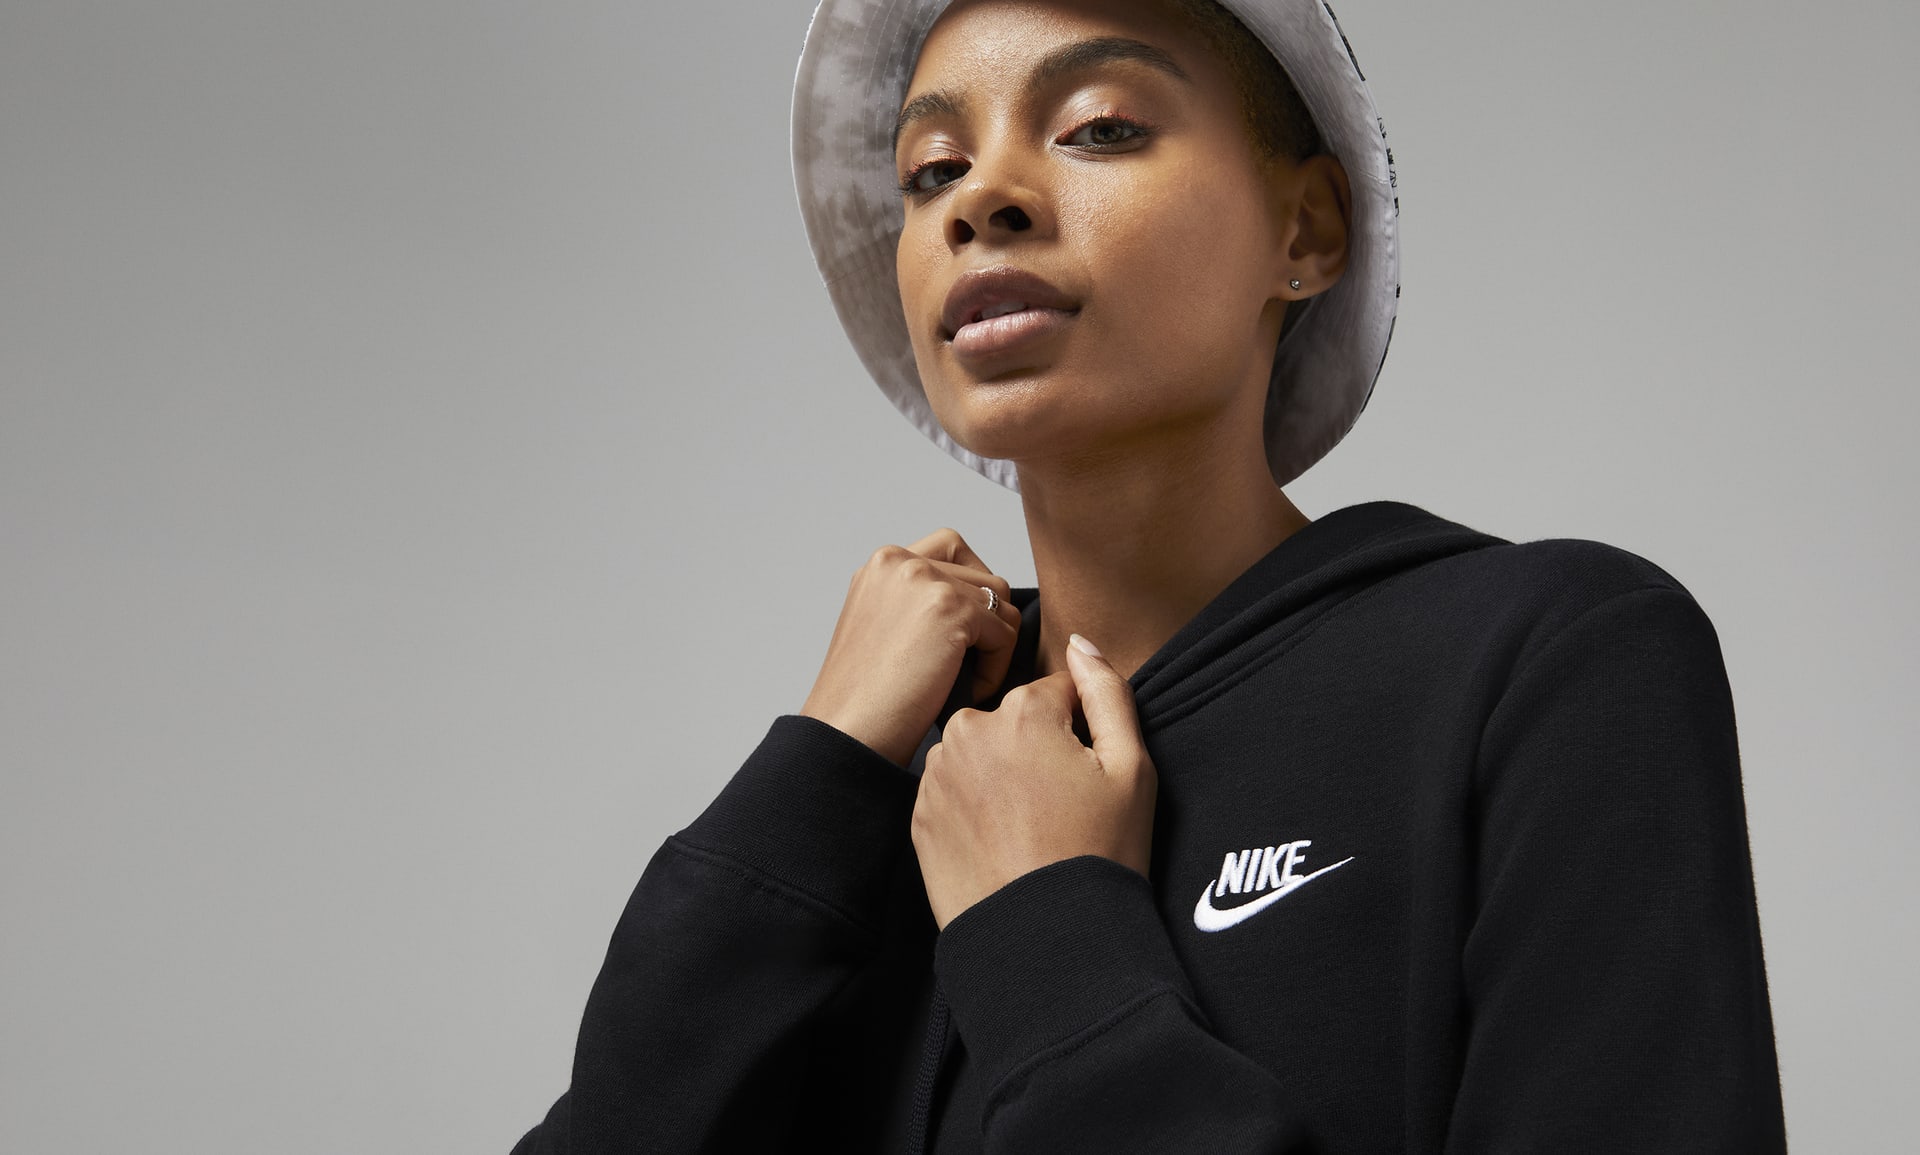 Nike Sportswear Club Fleece Women's Pullover Hoodie. Nike.com